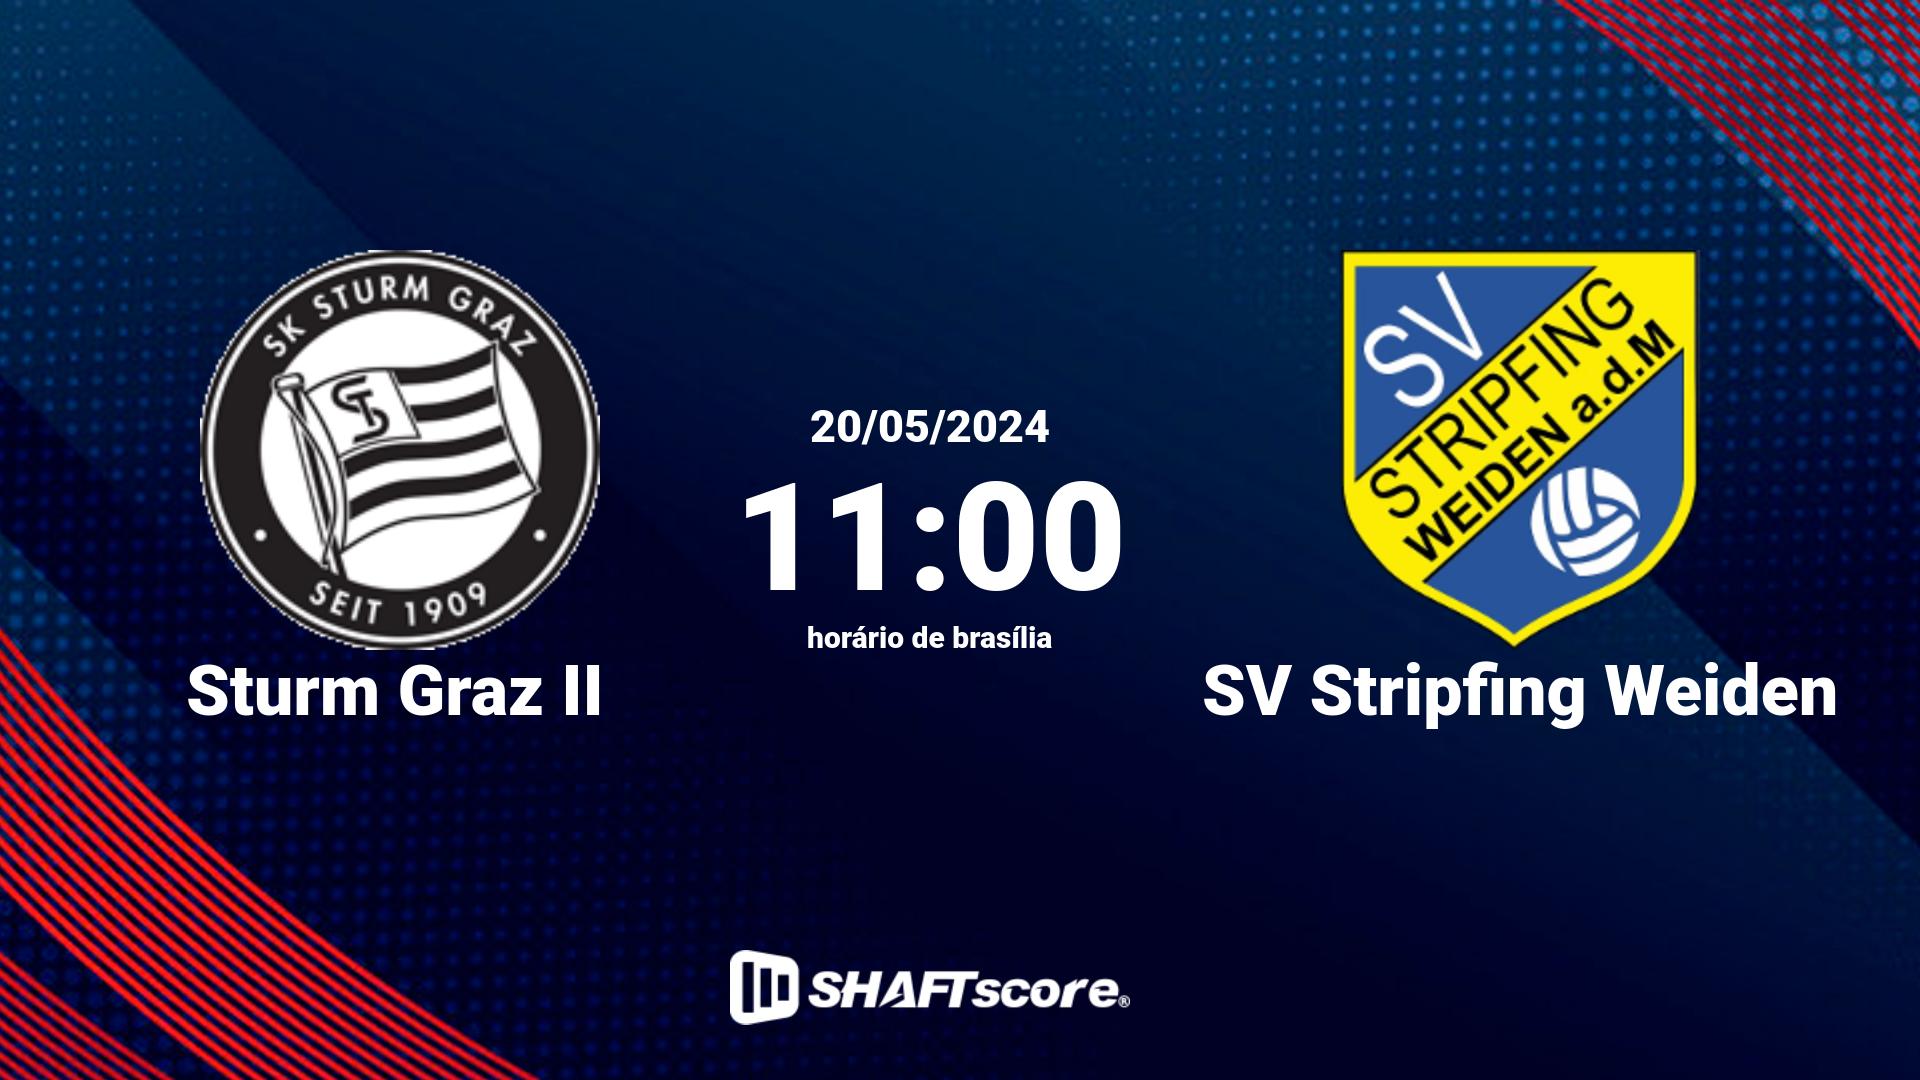 Estatísticas do jogo Sturm Graz II vs SV Stripfing Weiden 20.05 11:00